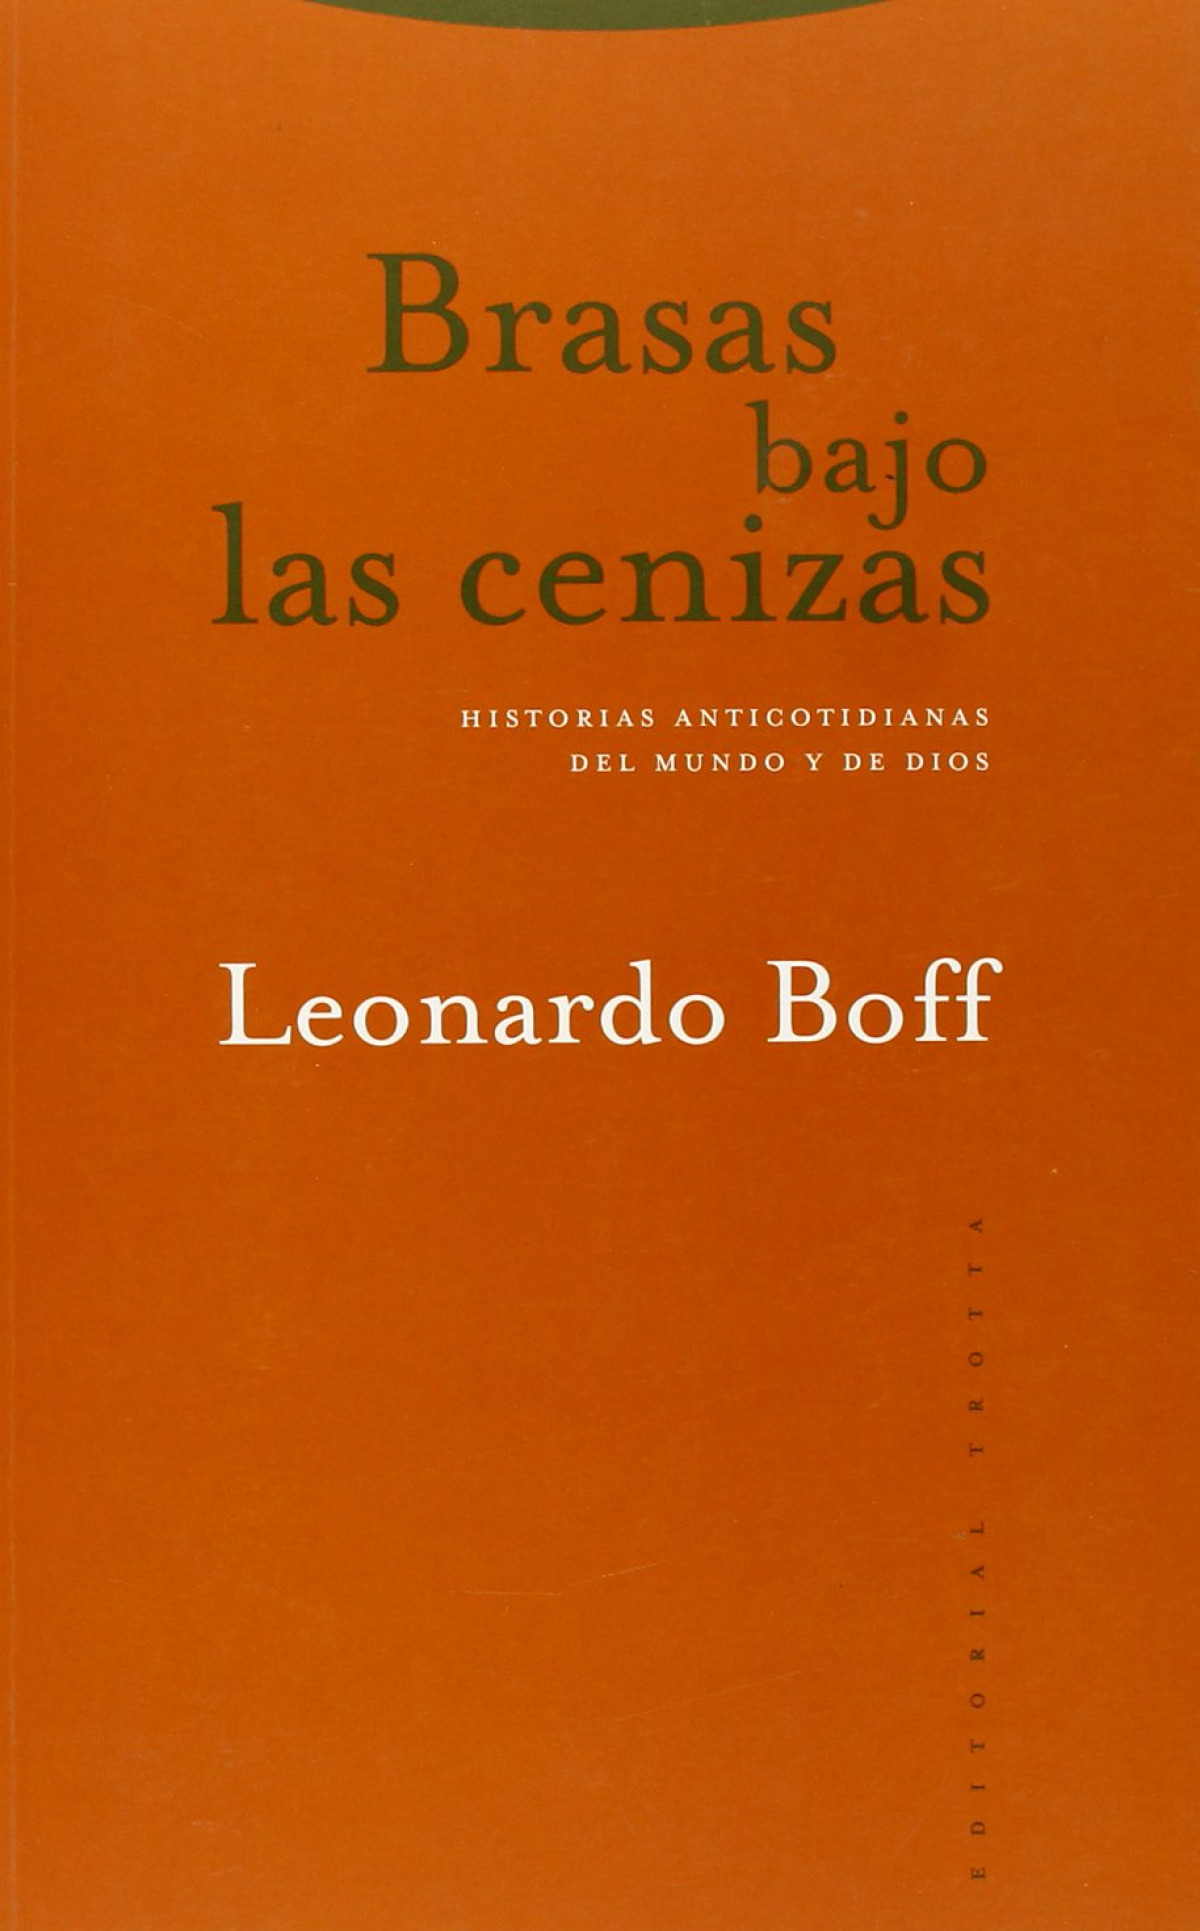 Brasas bajo las cenizas - Boff, Leonardo